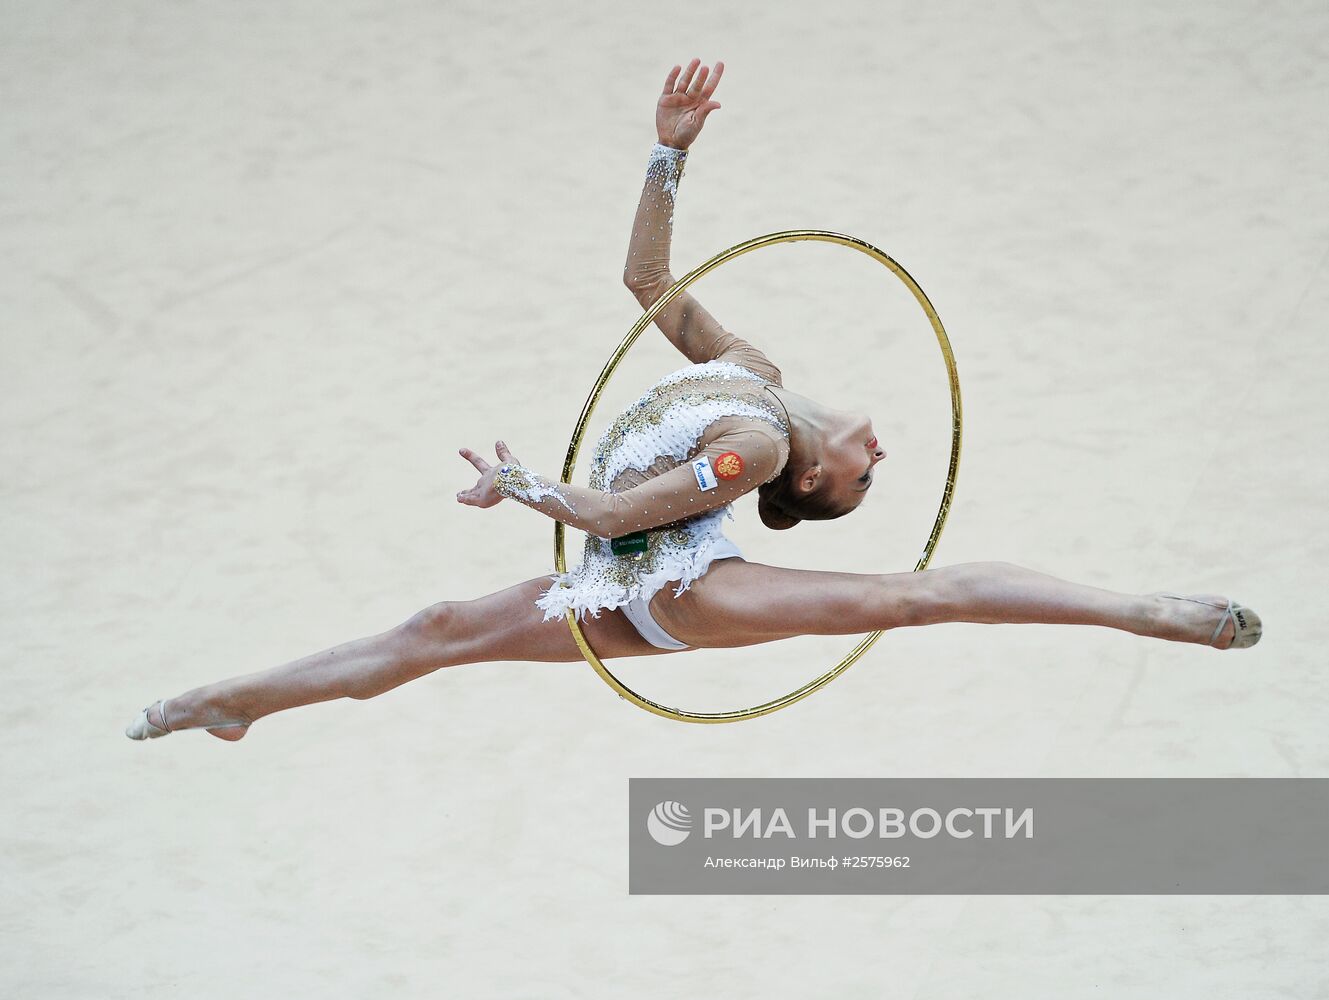 Художественная гимнастика. Гран-при Москвы. Первый день